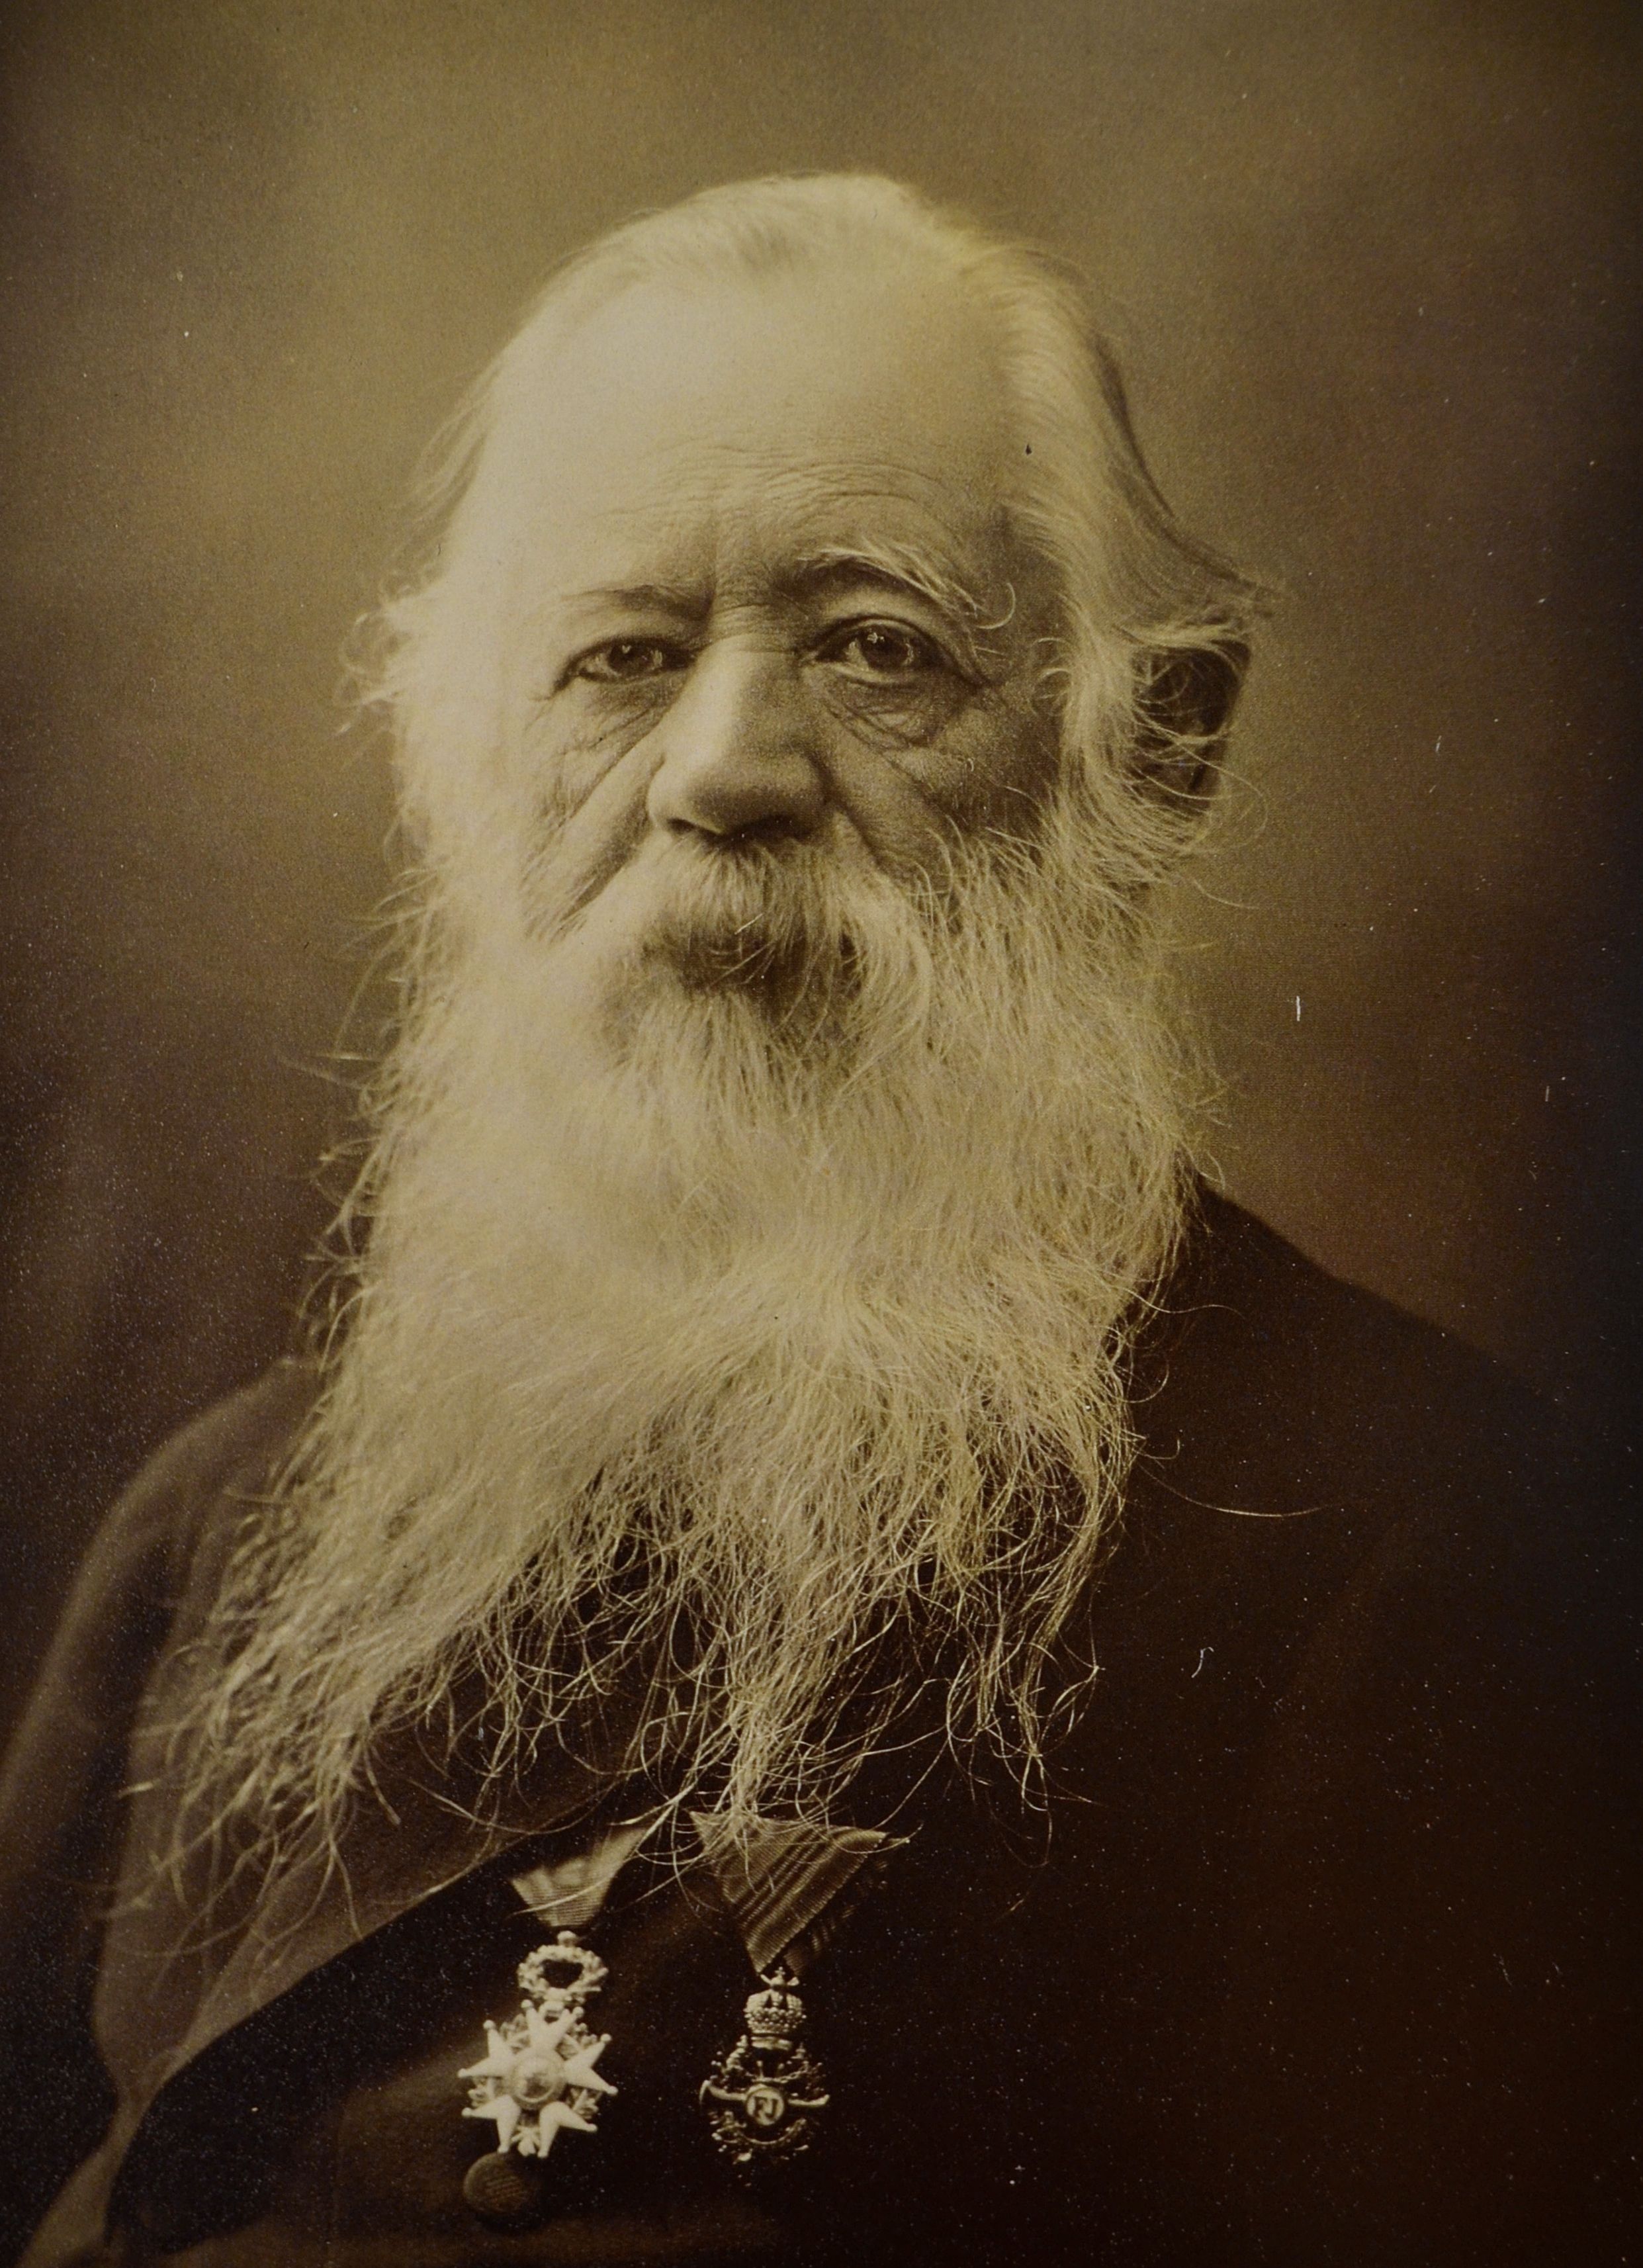 José María Velasco - 6 July 1840 - 26 August 1912